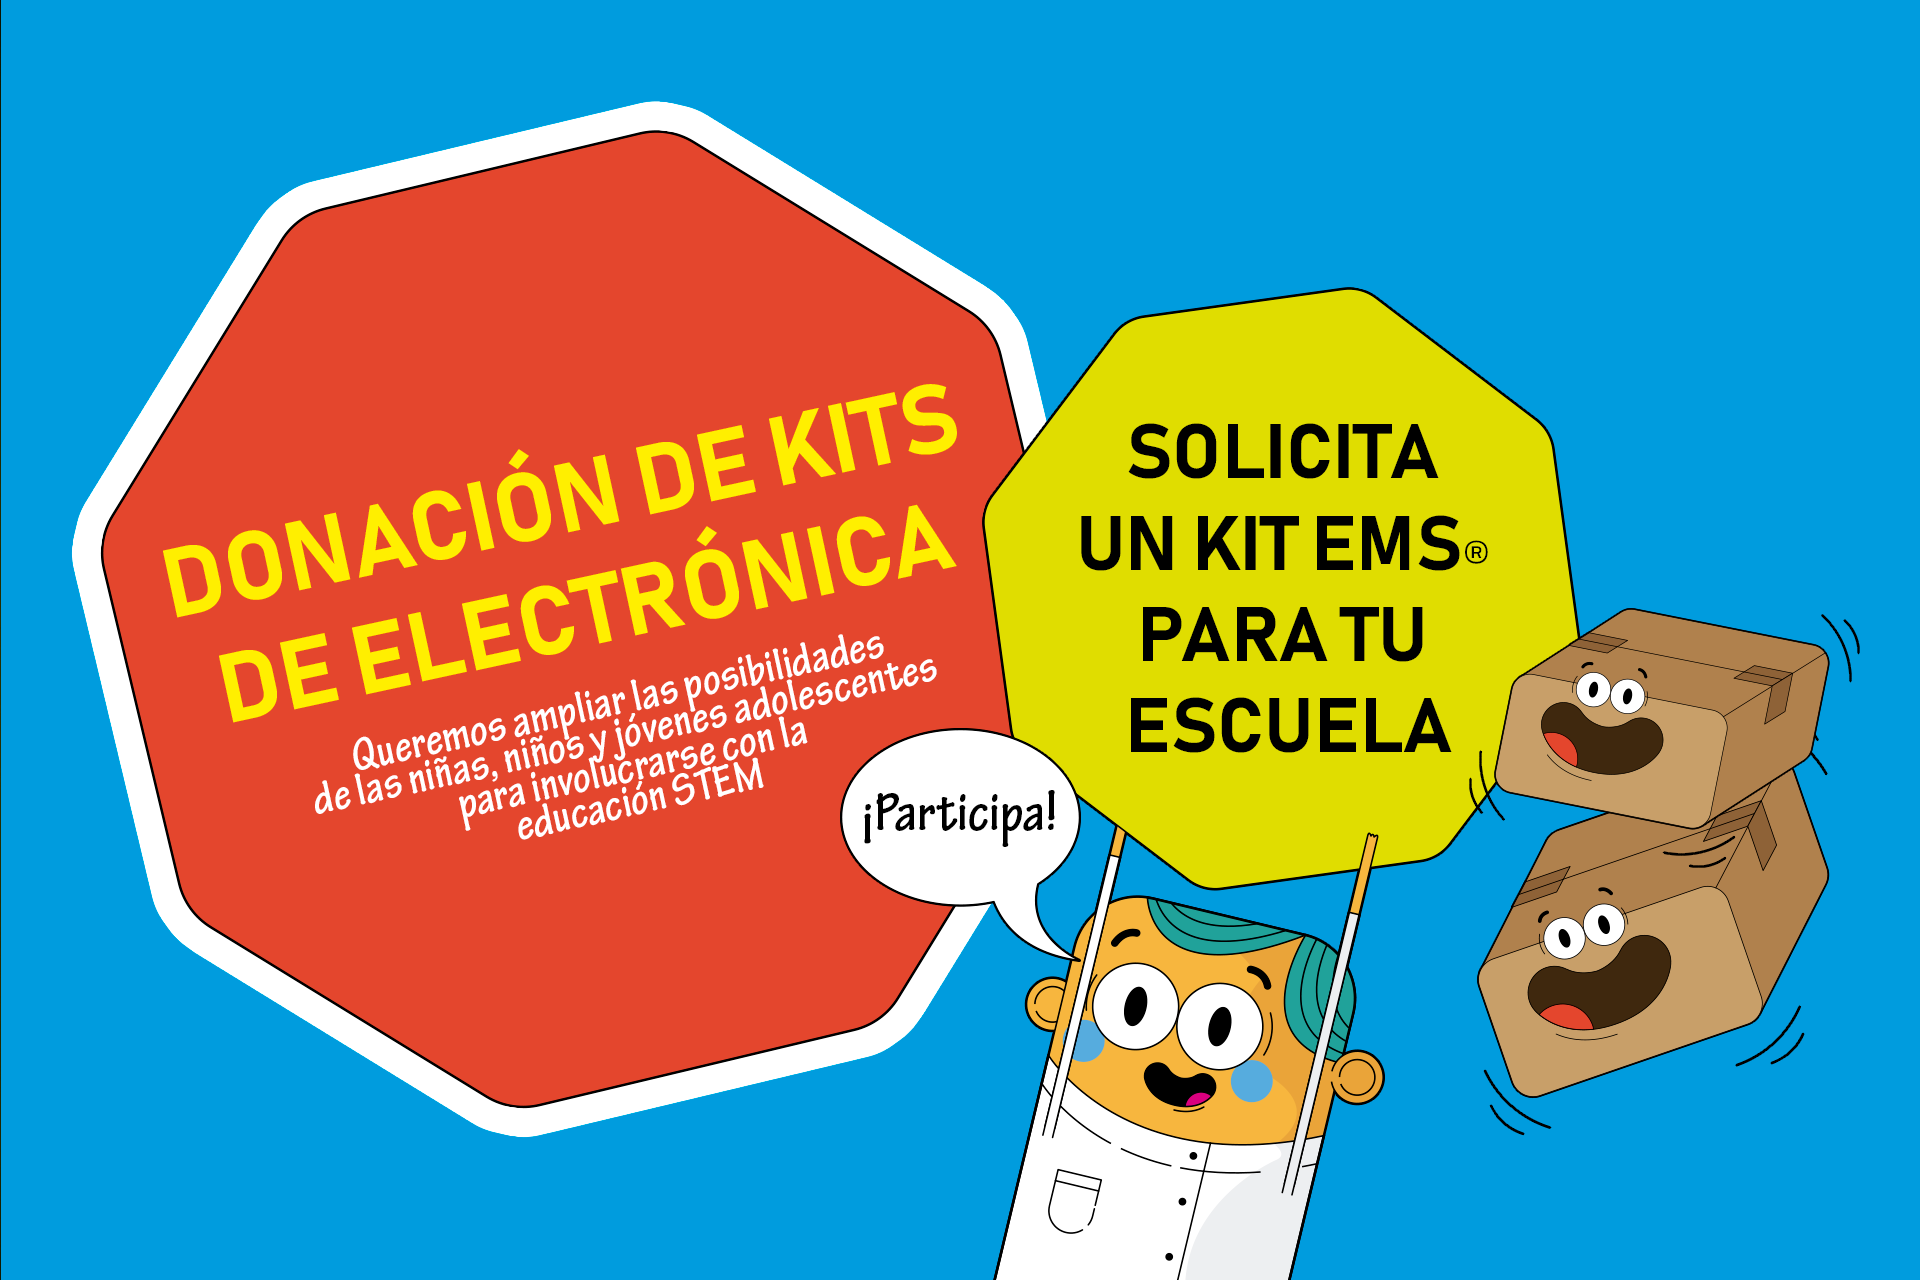 Donación de kits de electrónica